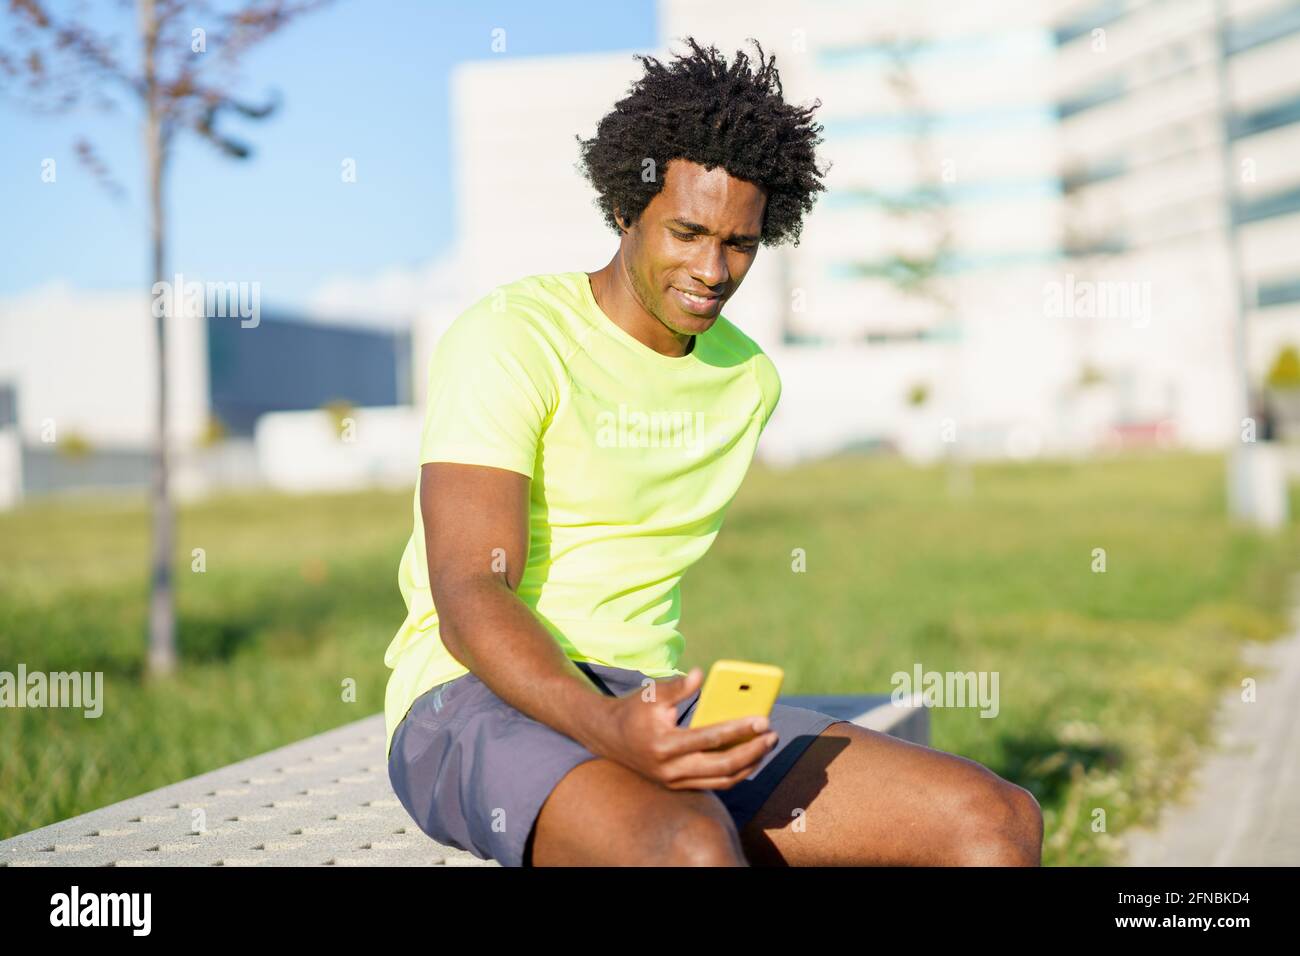 Hombre negro consultando su smartphone con alguna aplicación de ejercicio mientras descansa de su entrenamiento. Foto de stock